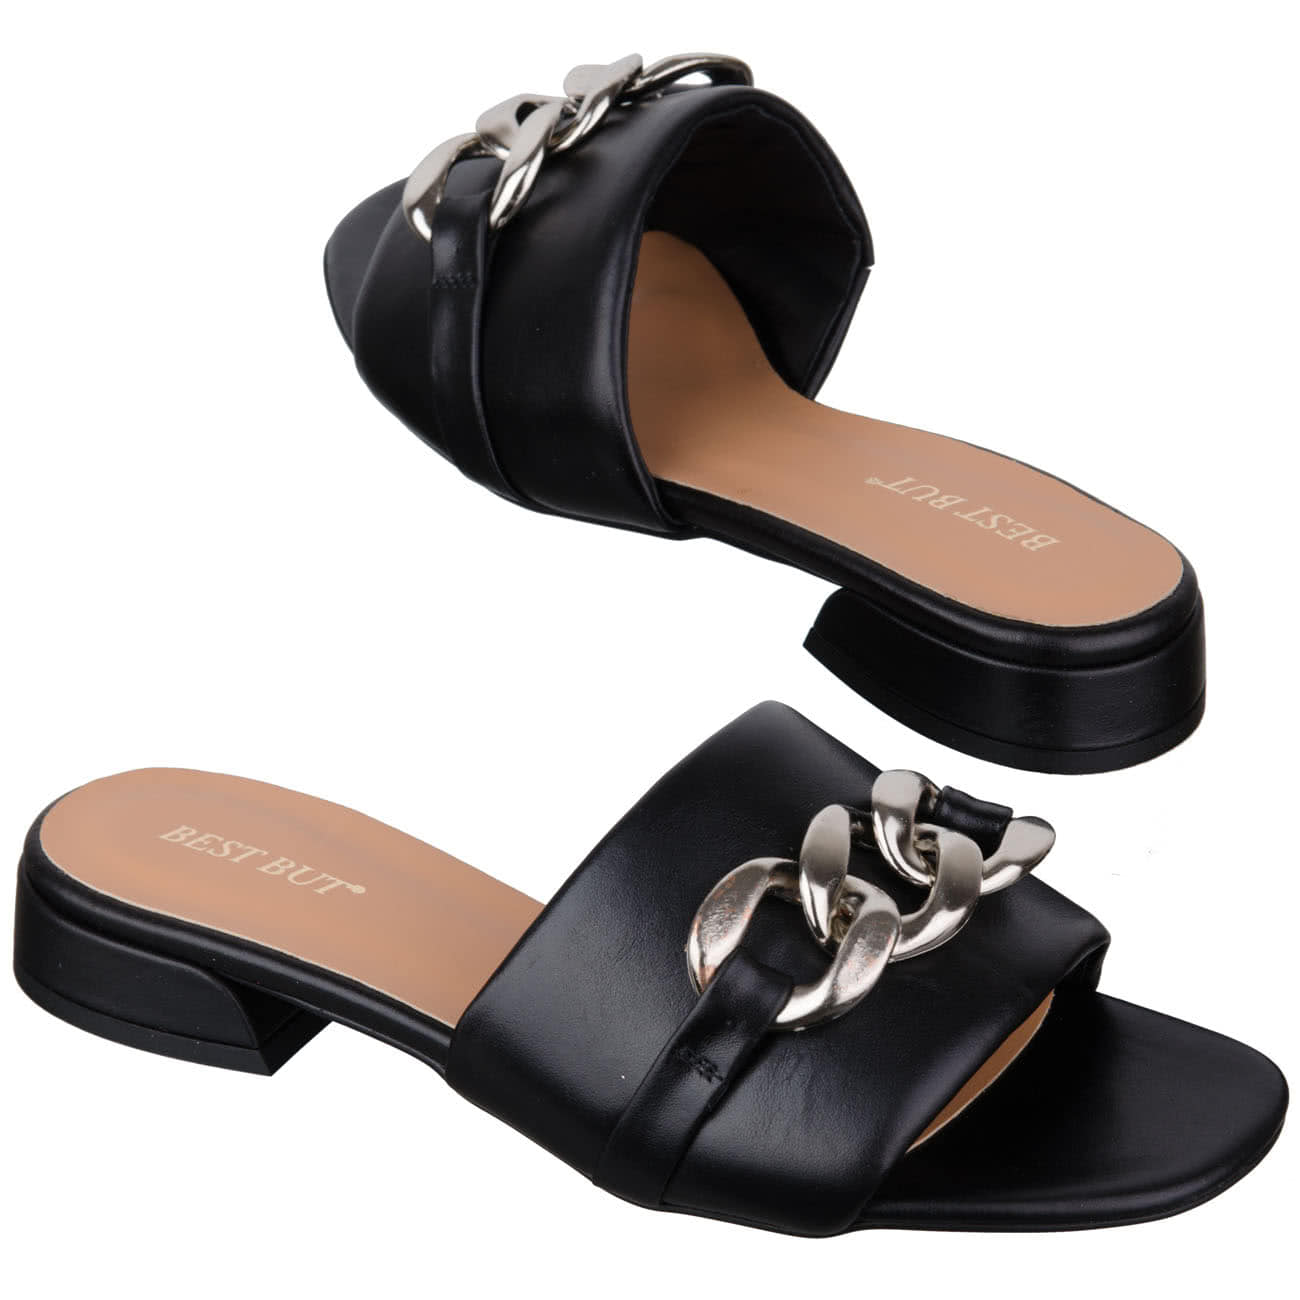 Кожаные сабо женские черного цвета на каблуке 2.5 см купить в интернетмагазине Kwinto